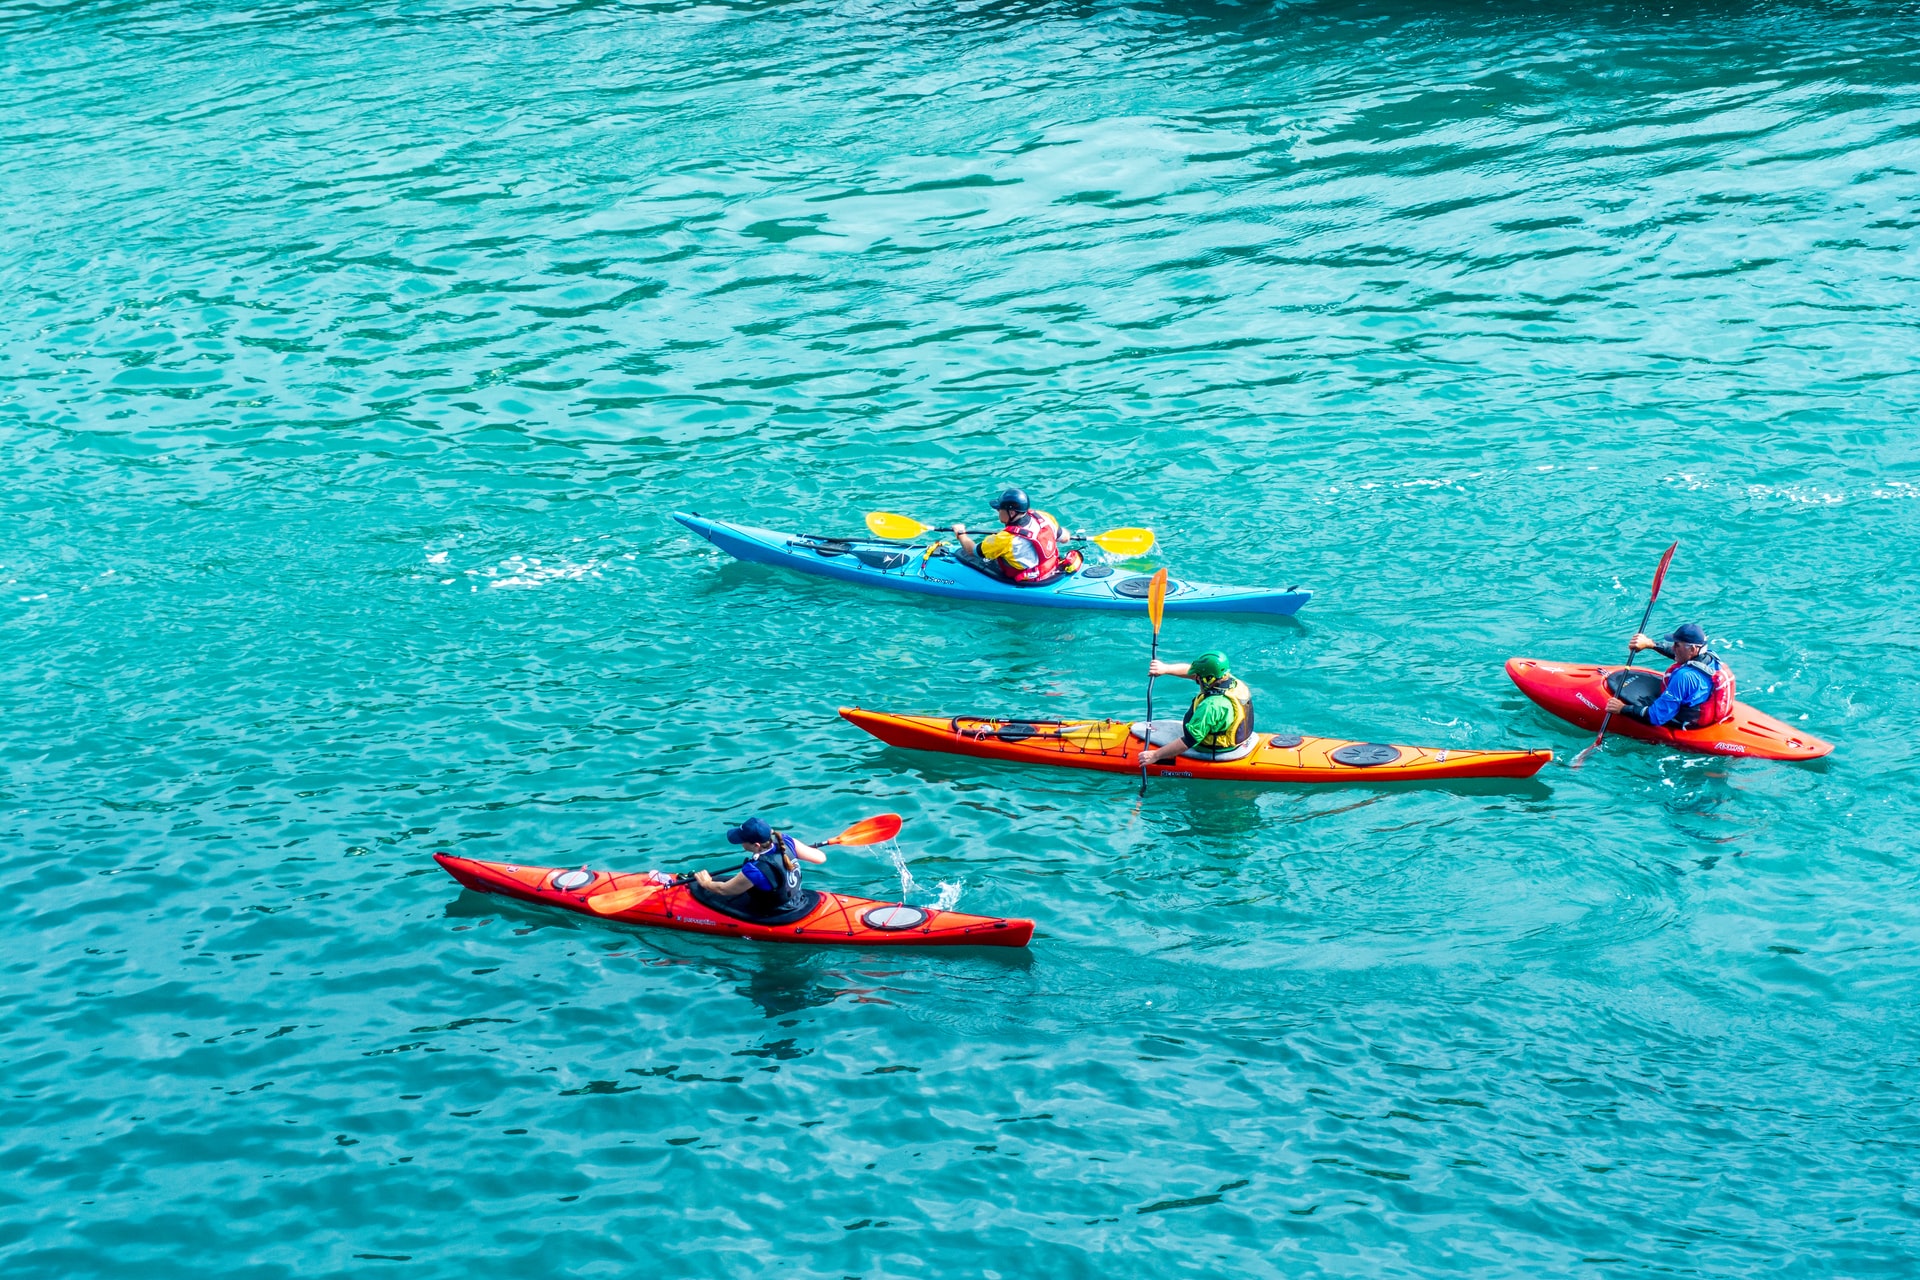 Do Kayaks Tip Over Easily?